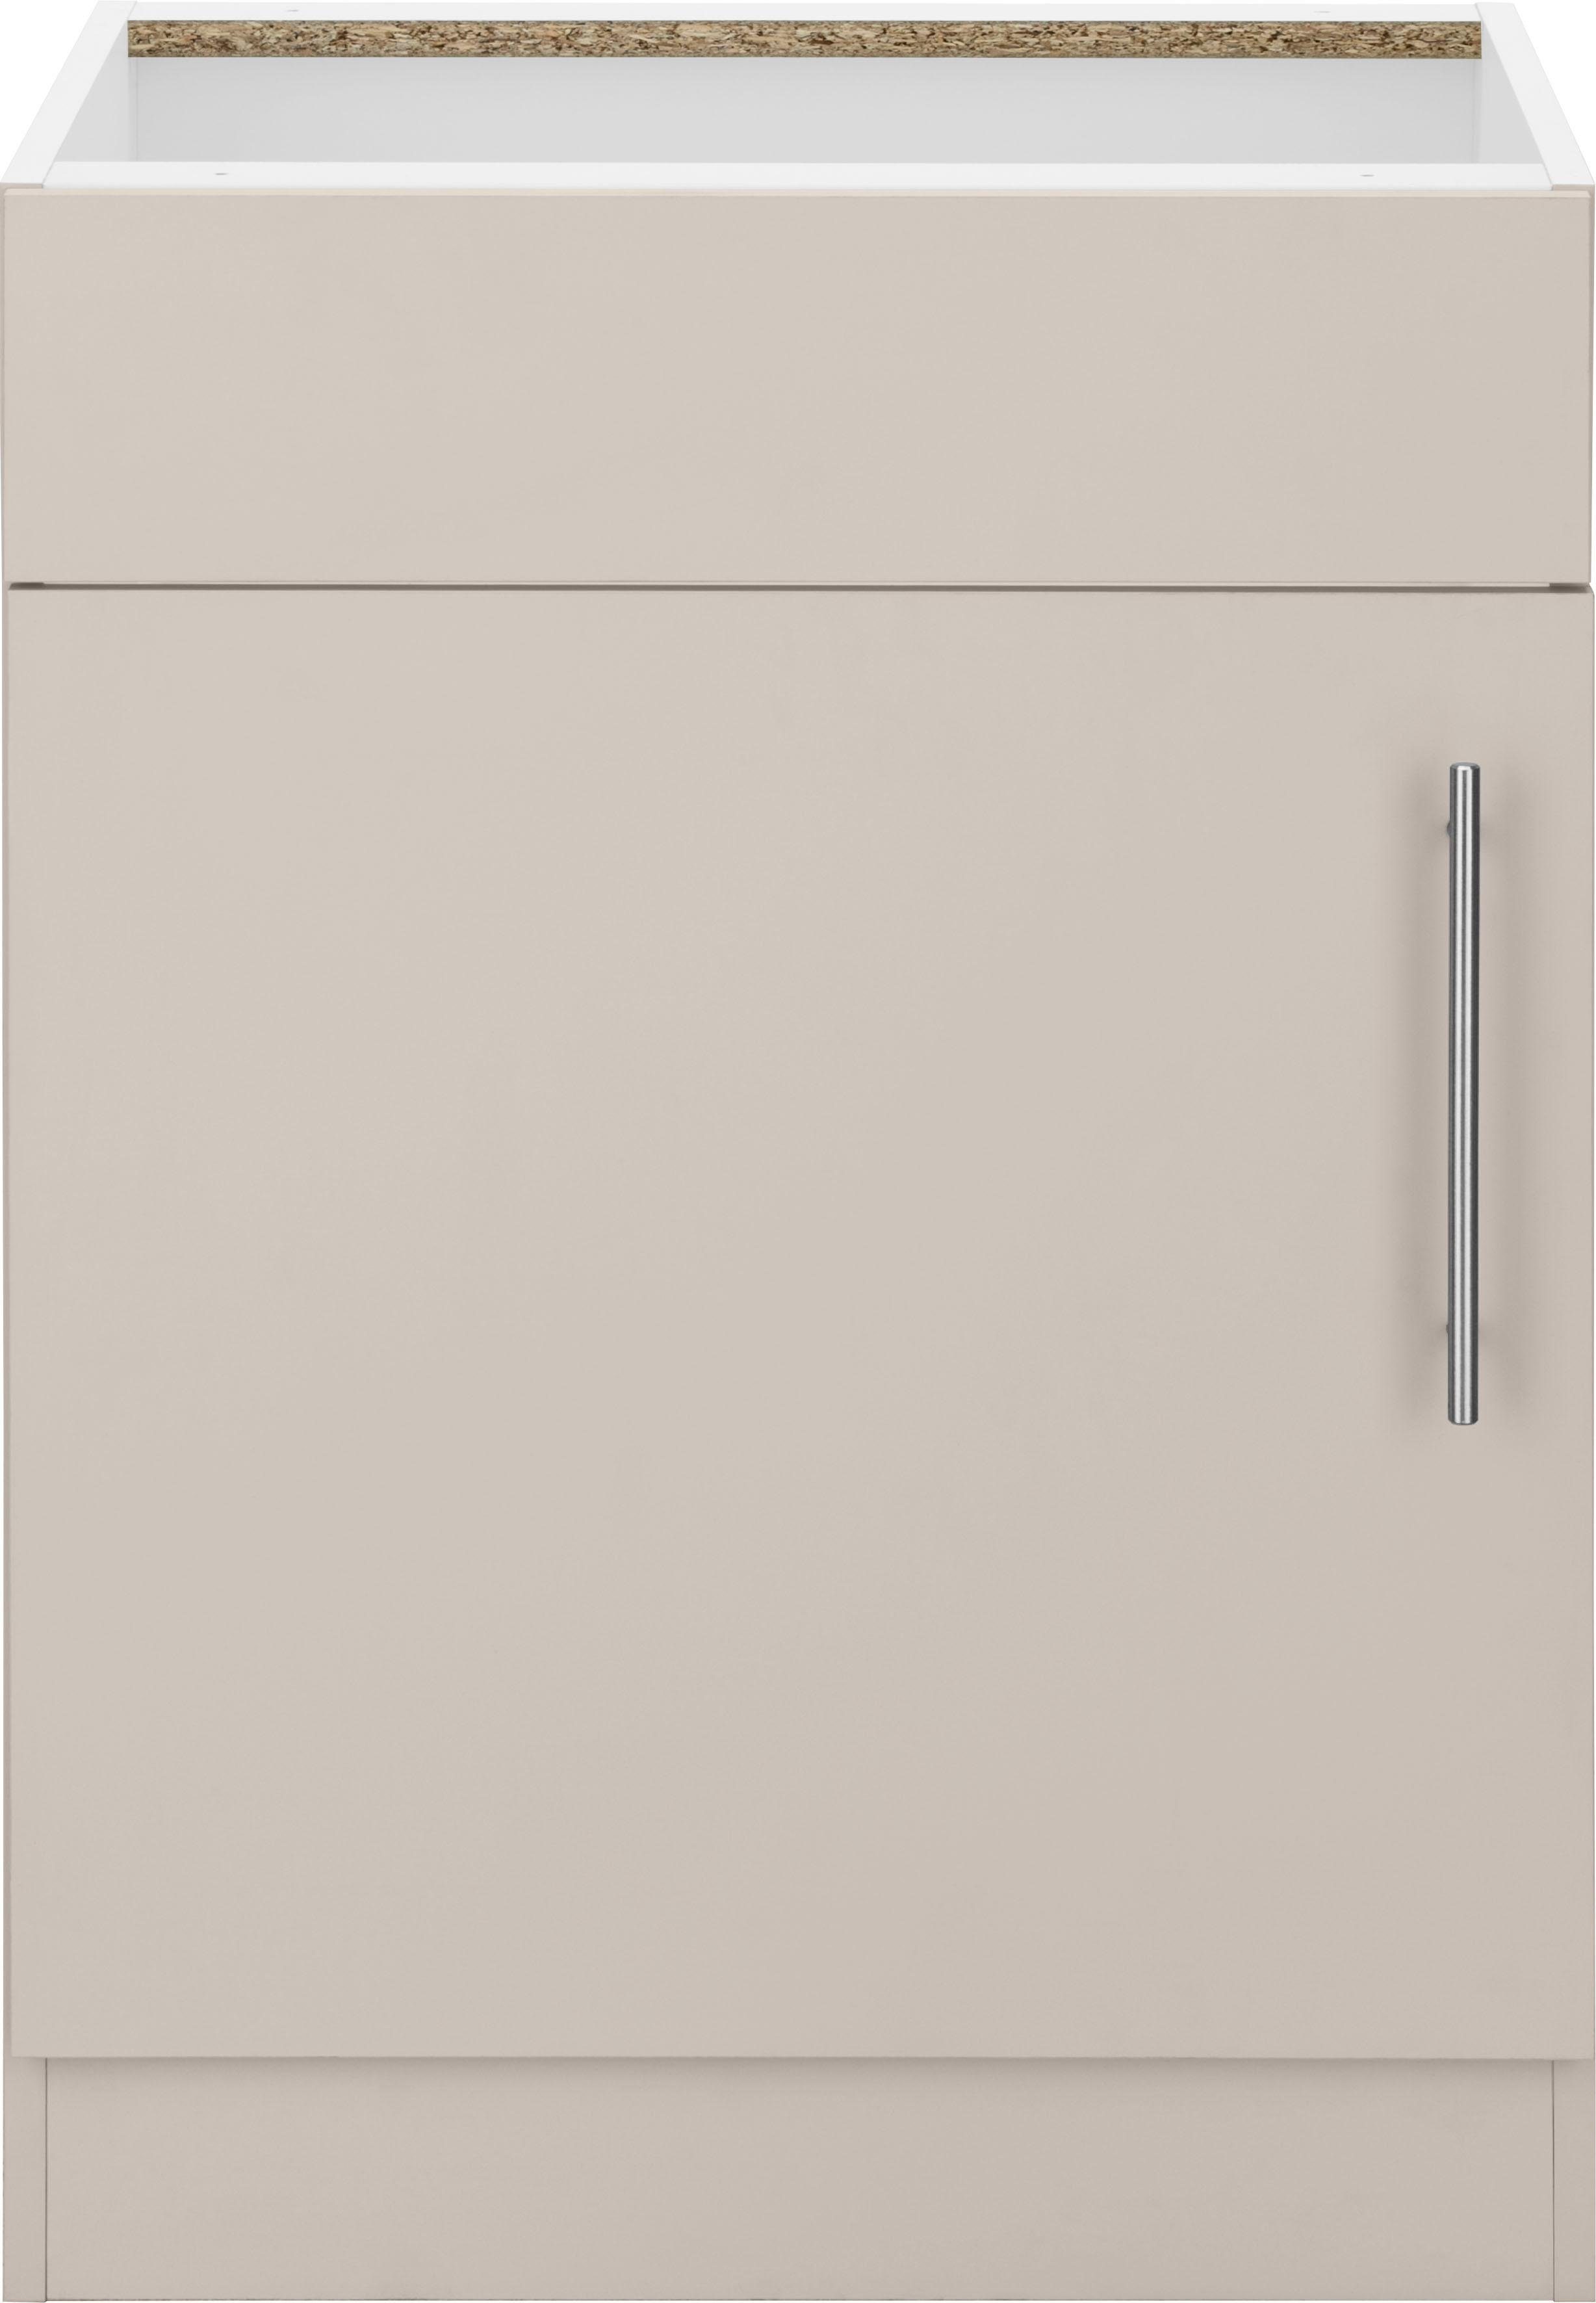 wiho Küchen Spülenschrank Cali 60 cm breit, ohne Arbeitsplatte Front und Korpus: Cashmere | Cashmere